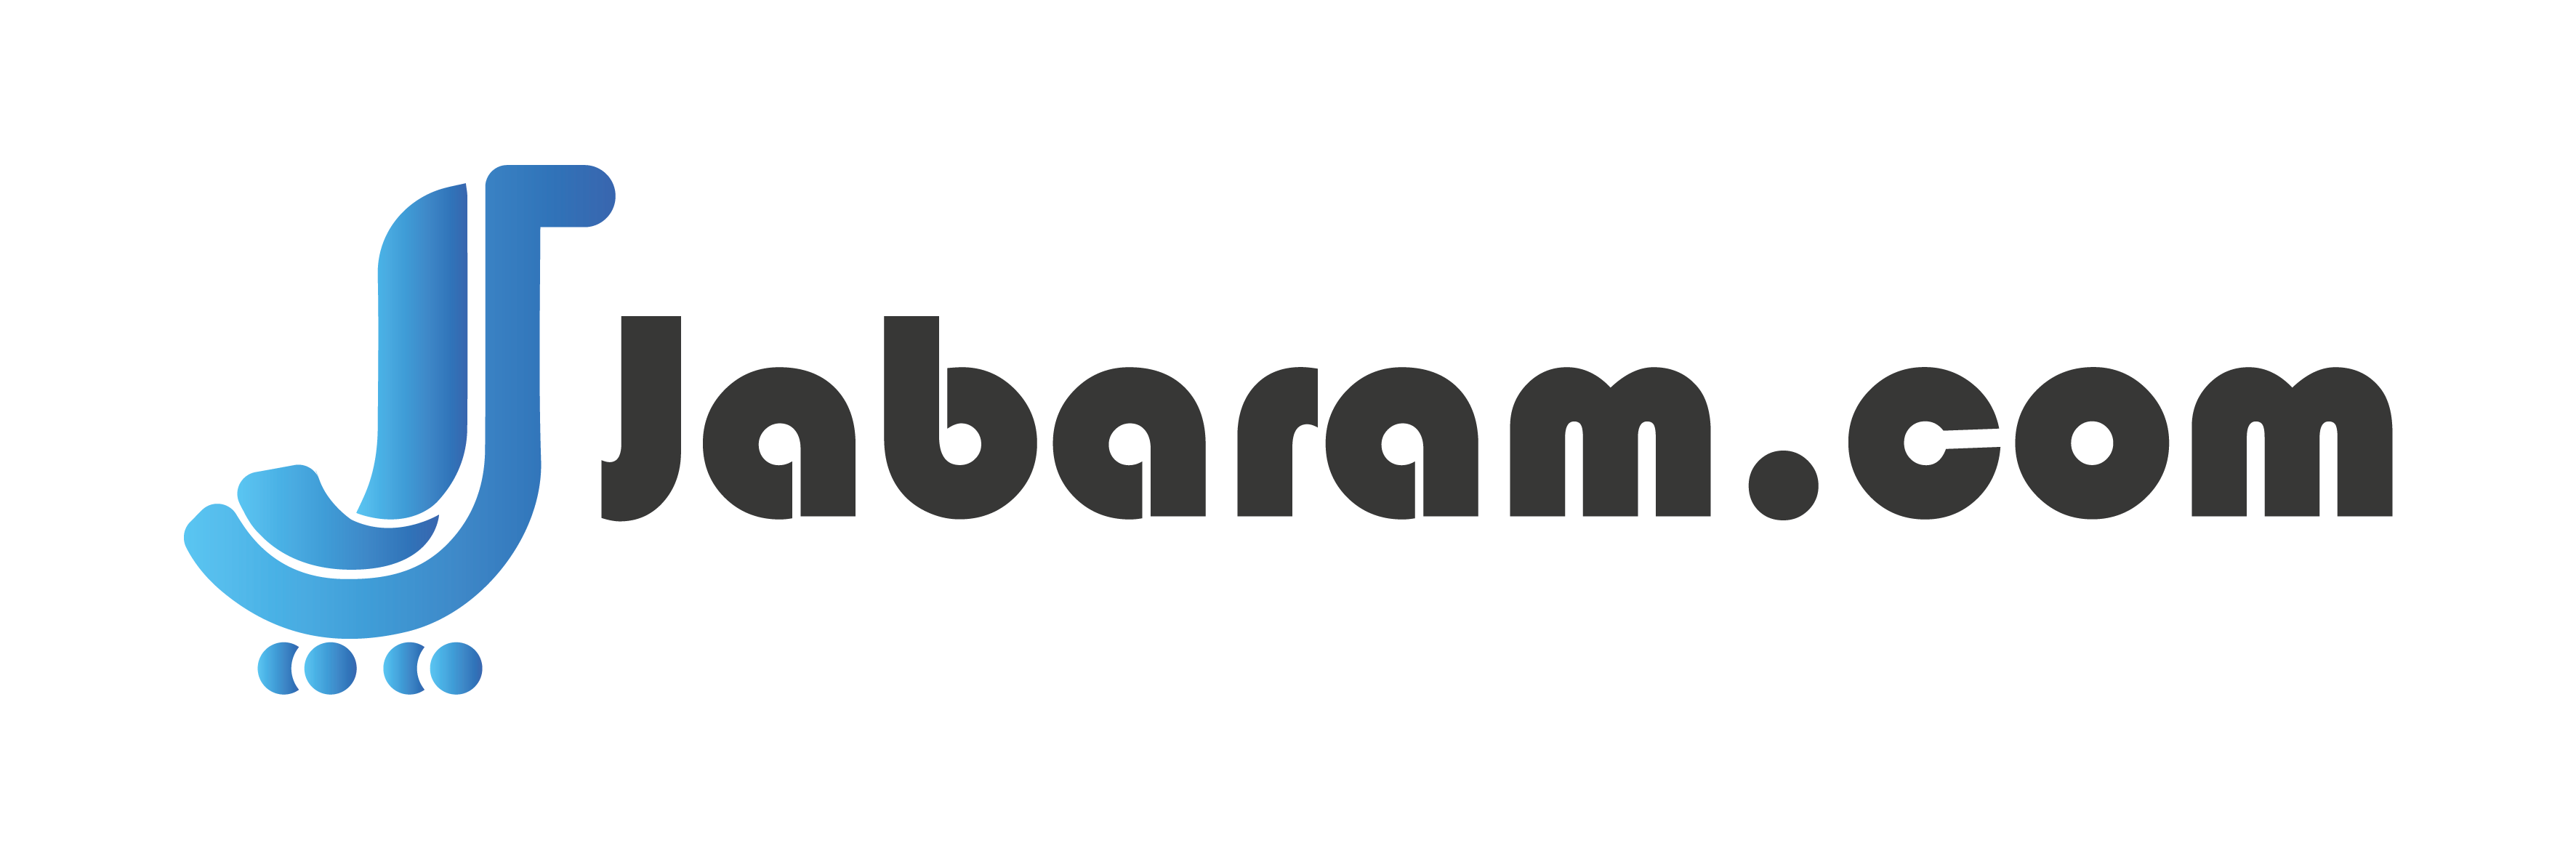 jabaram logo